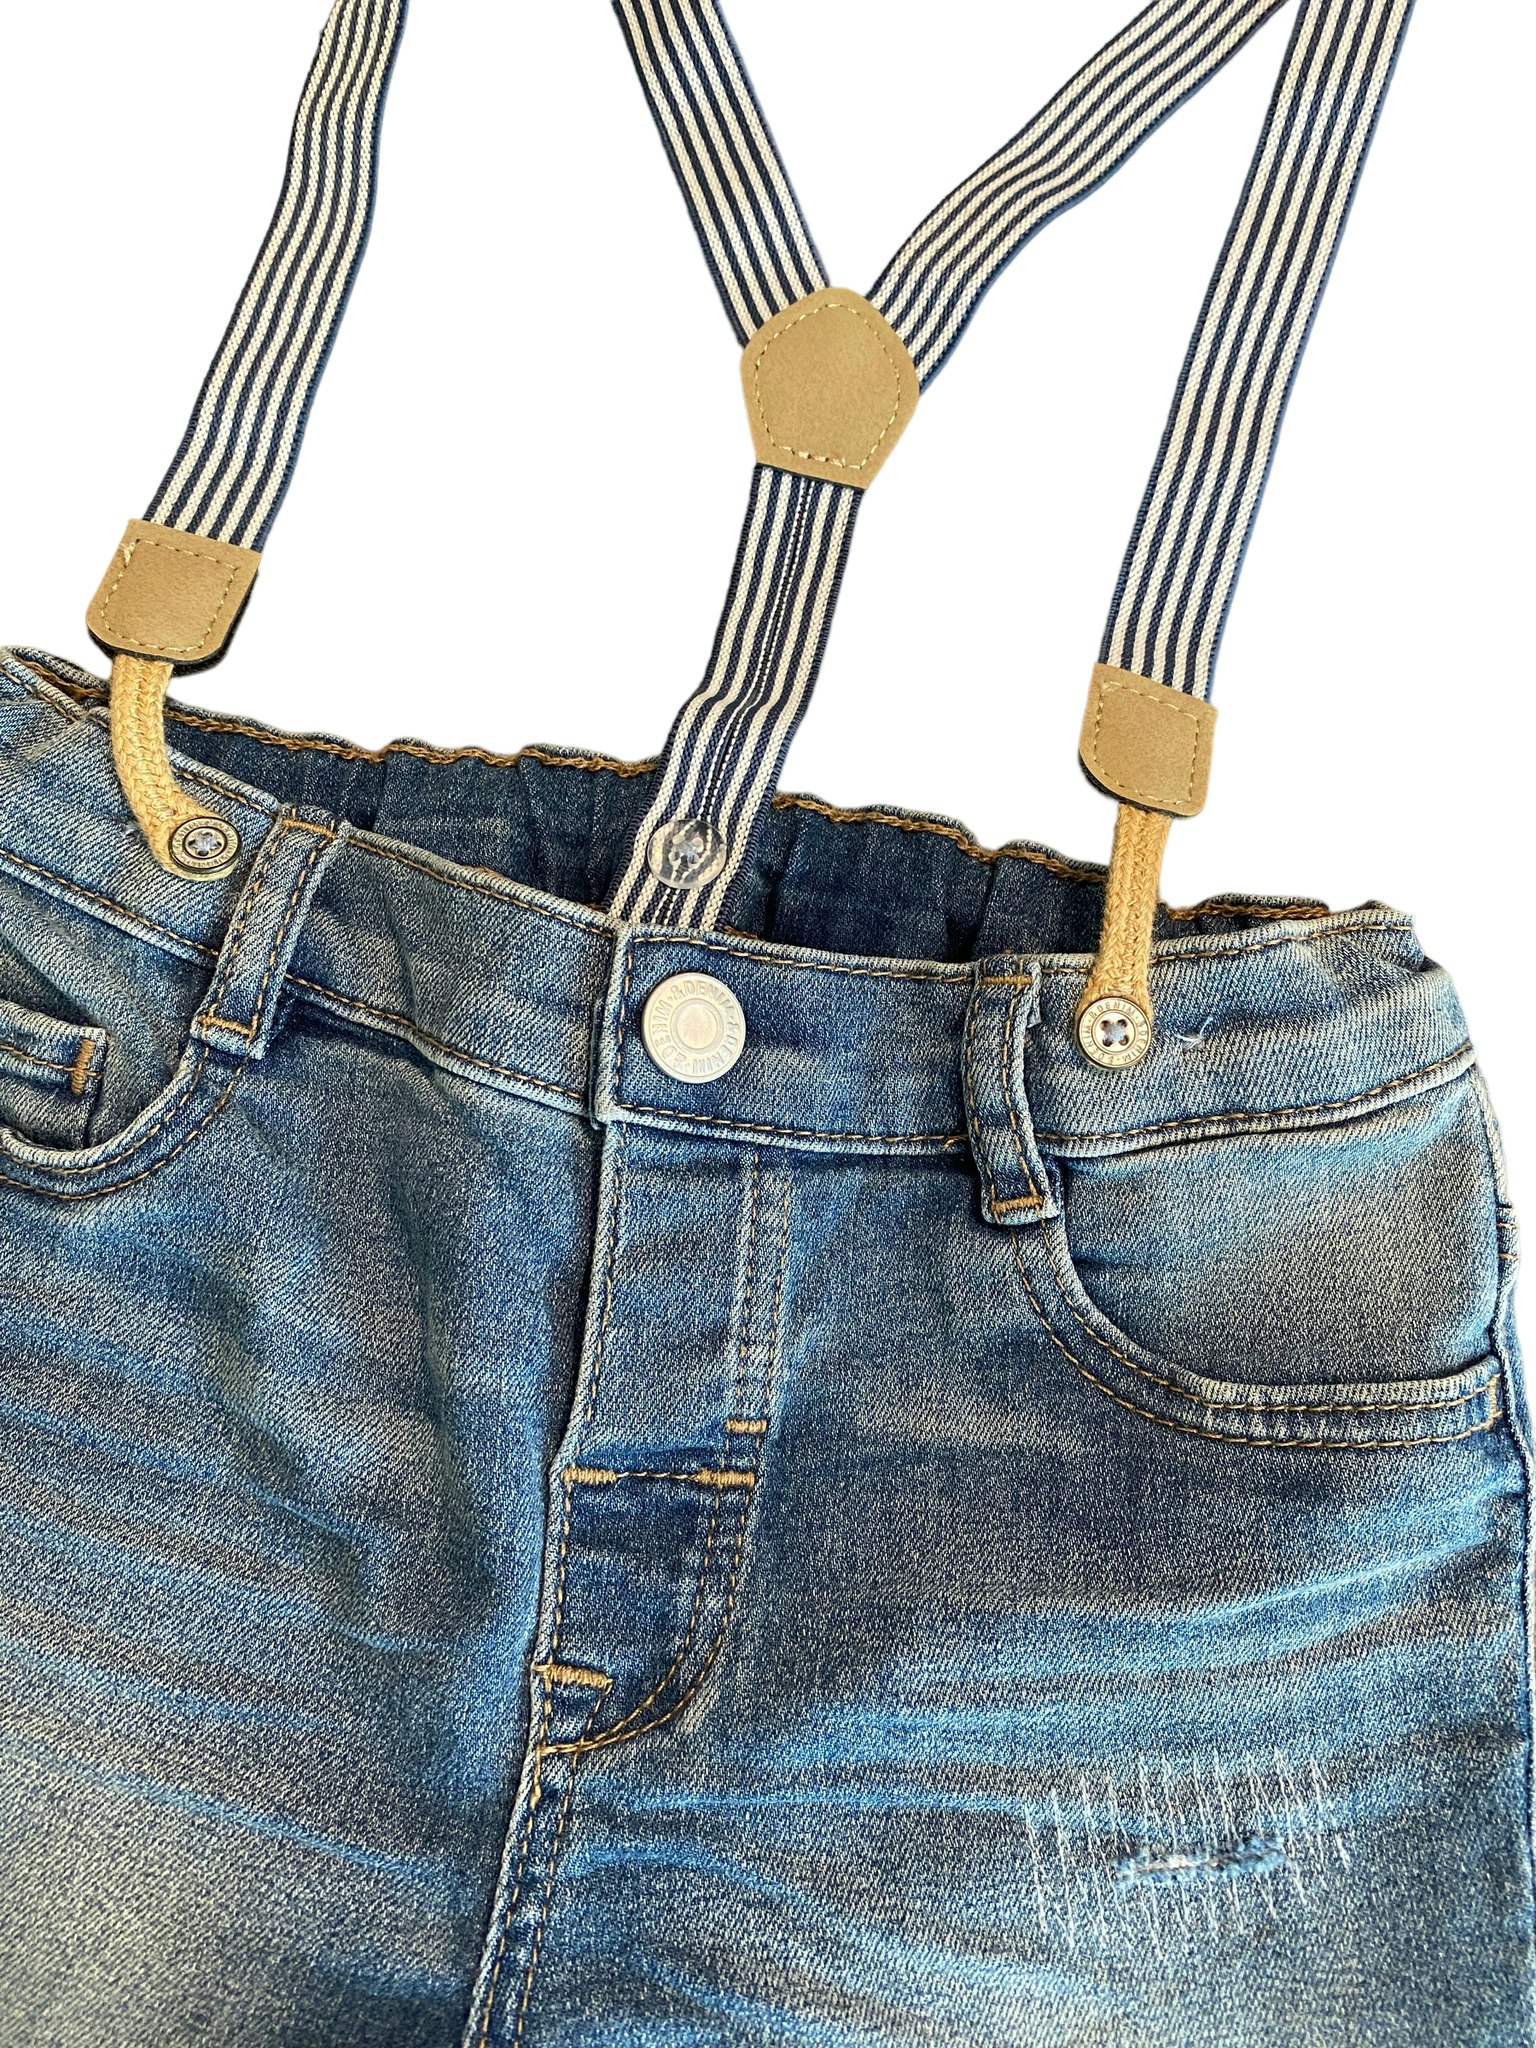 Jeansshorts med hängslen, HM, stl 92